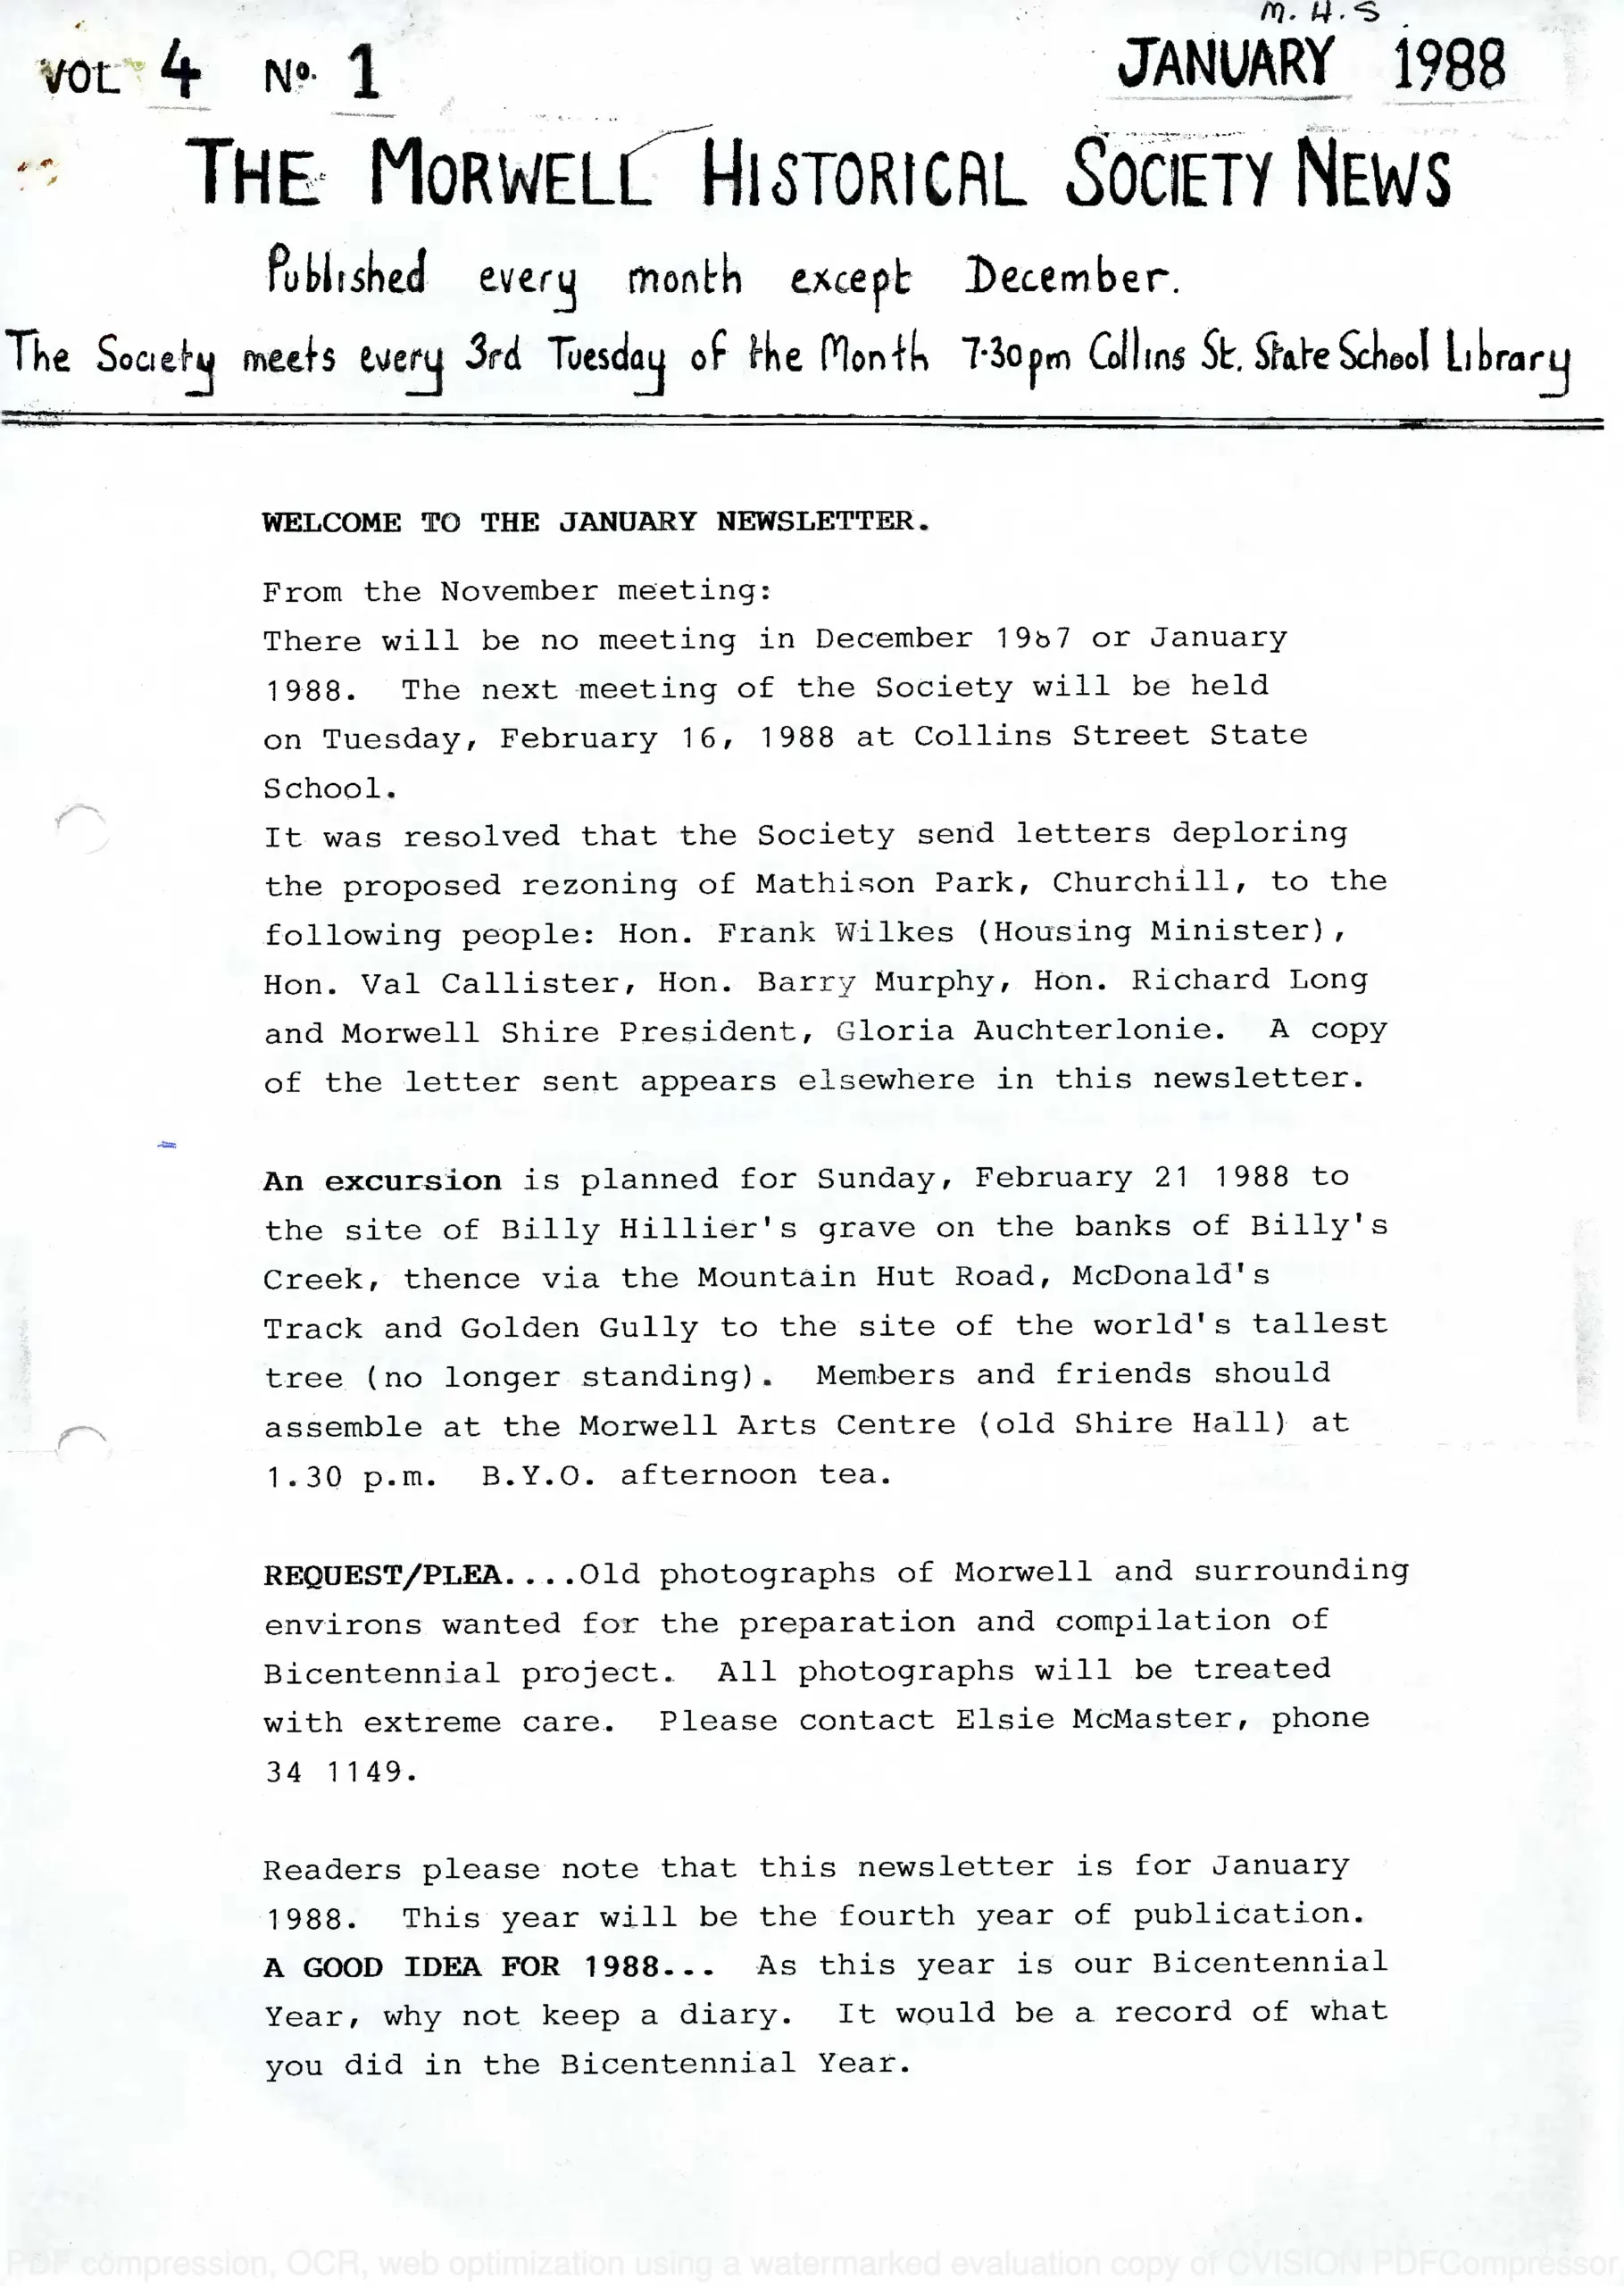 Newsletter January 1988